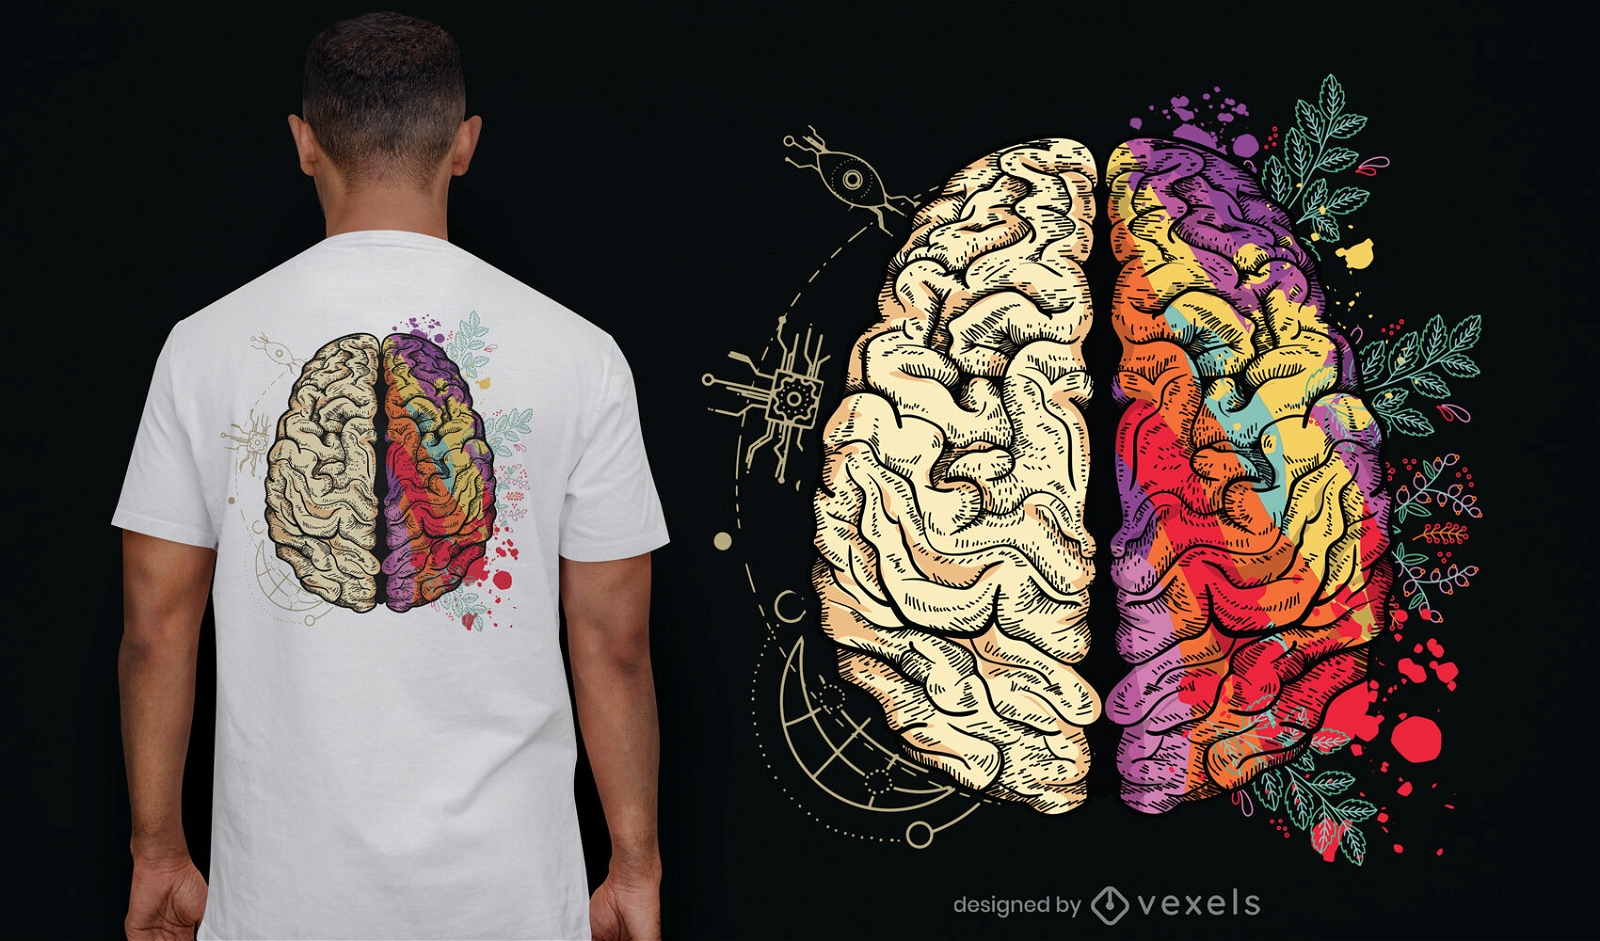 Dise?o de camiseta de cerebro humano creativo y l?gico.